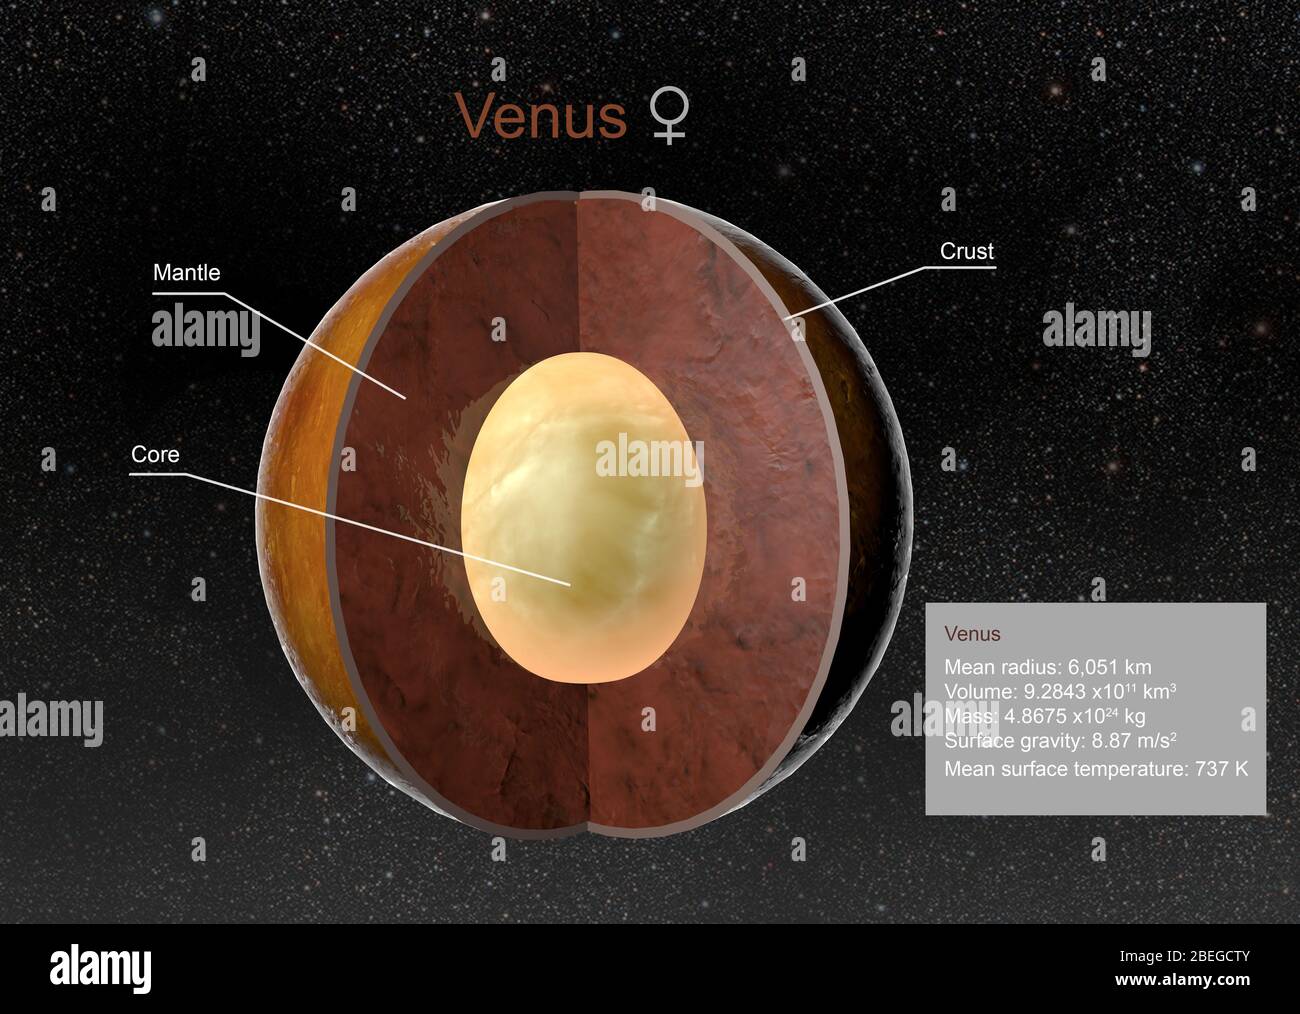 Ilustración del planeta Venus. La corteza, el manto y el núcleo están marcados en vista de corte. También se muestran hechos relacionados con el tamaño, la gravedad y la temperatura de Venus. Foto de stock